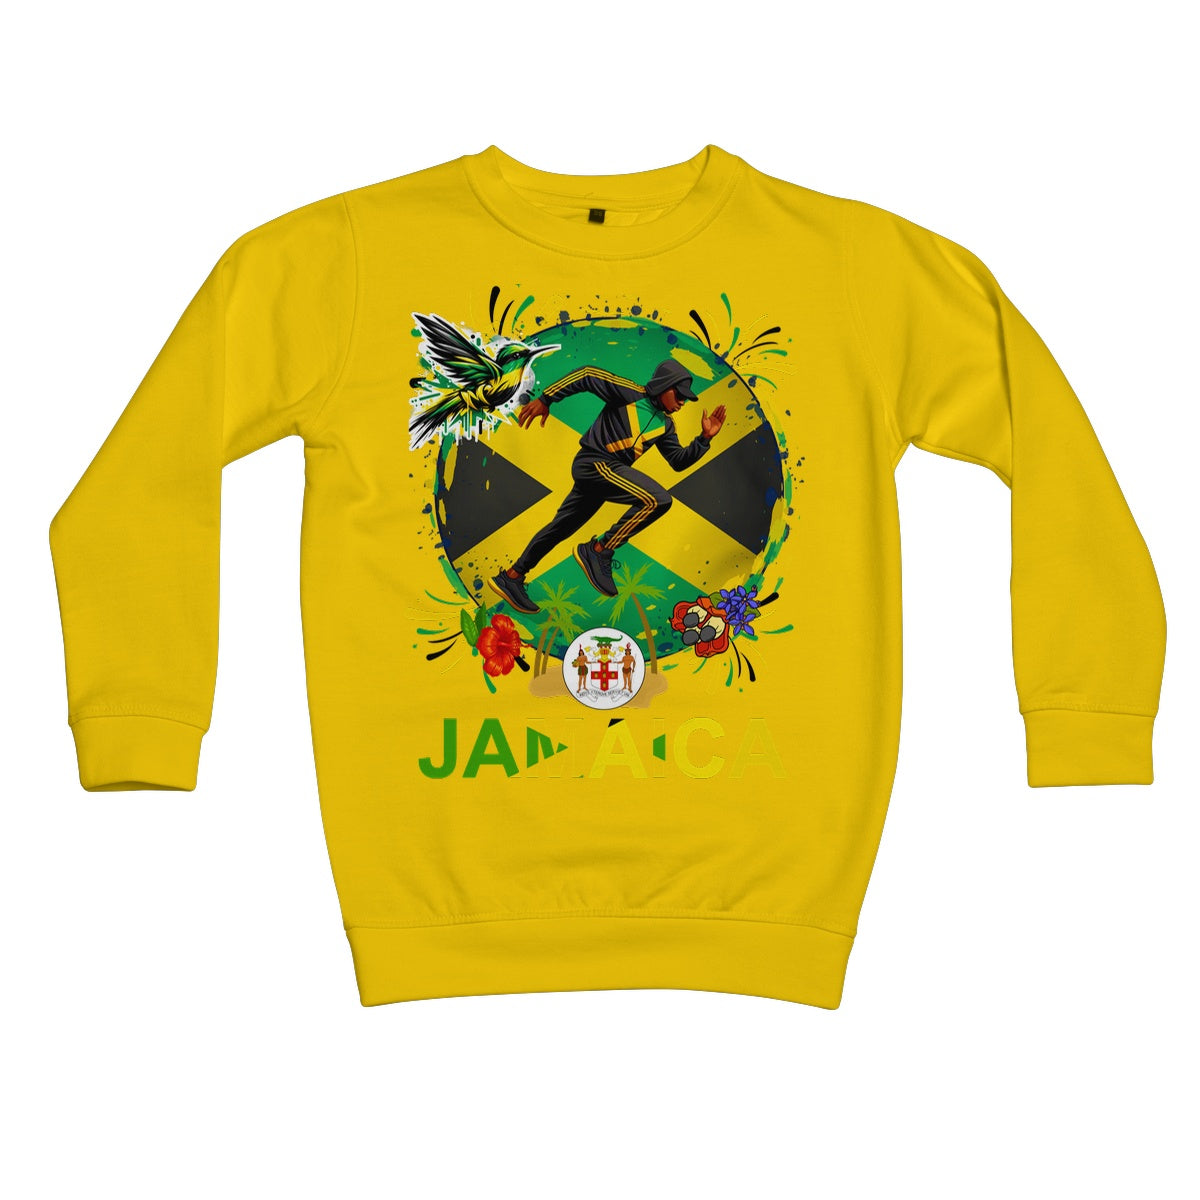 Jamaica Love Graffiti  Kids Sweatshirt